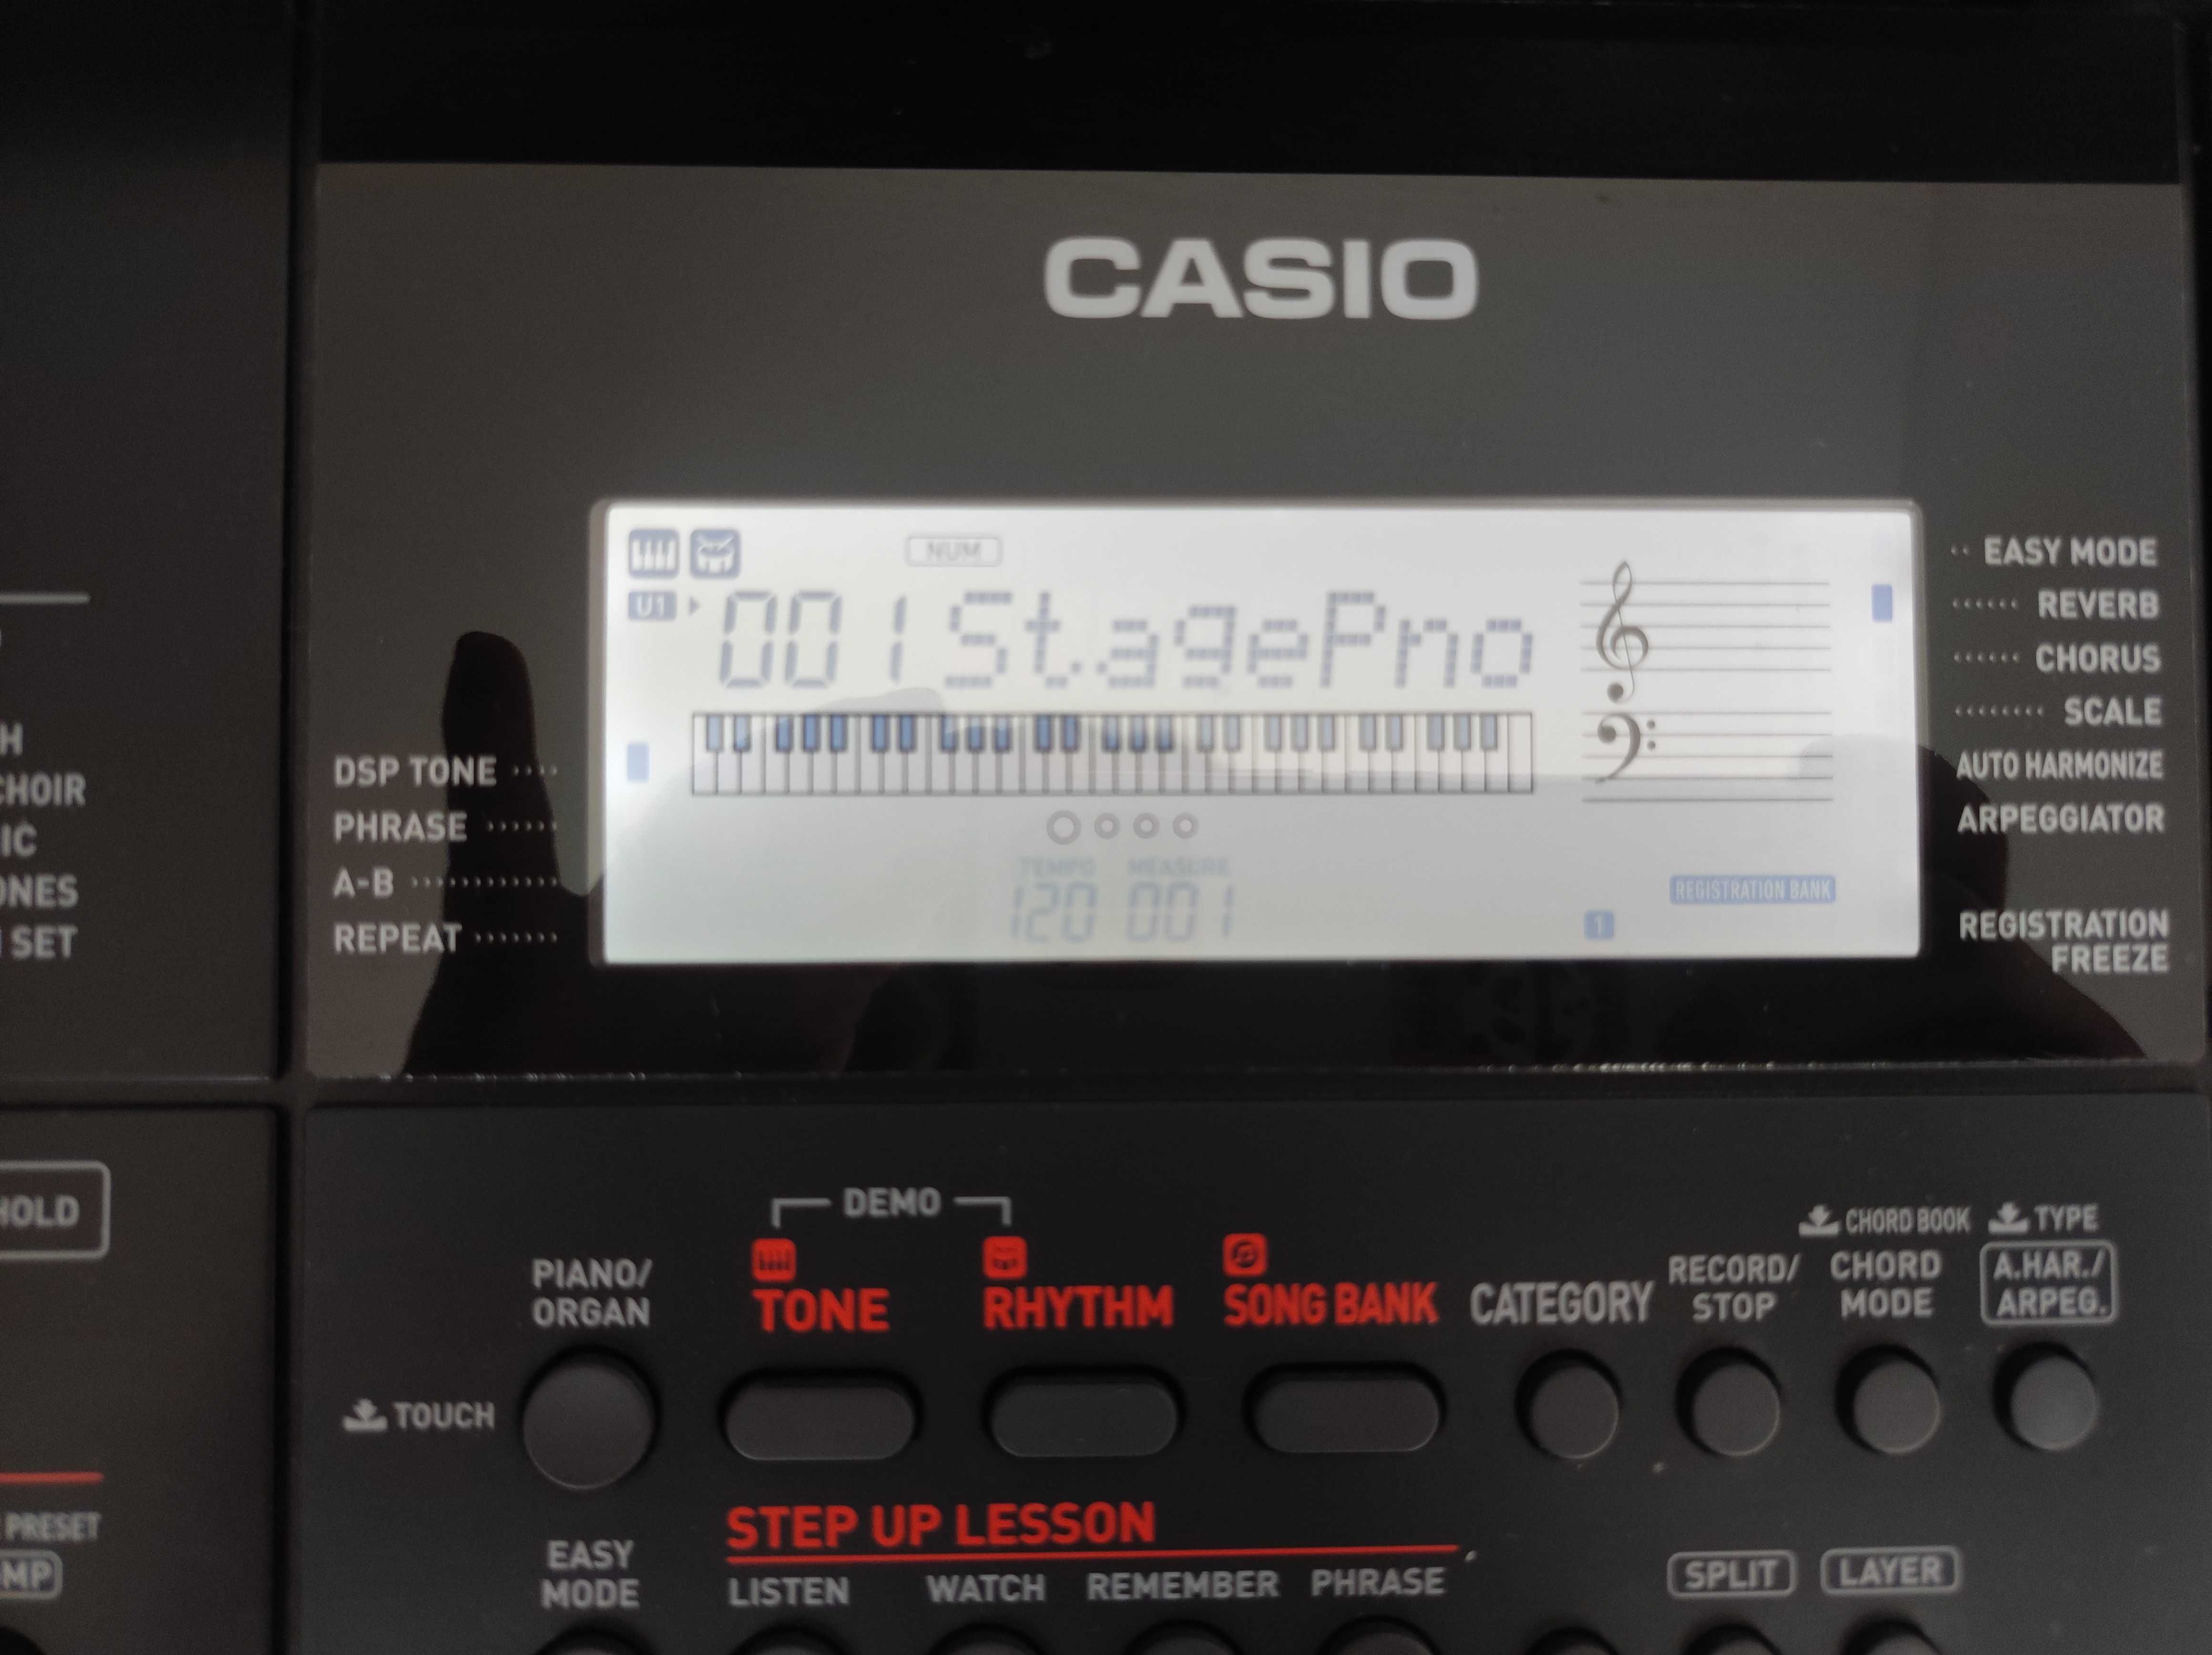 Keyboard CASIO CT-X700